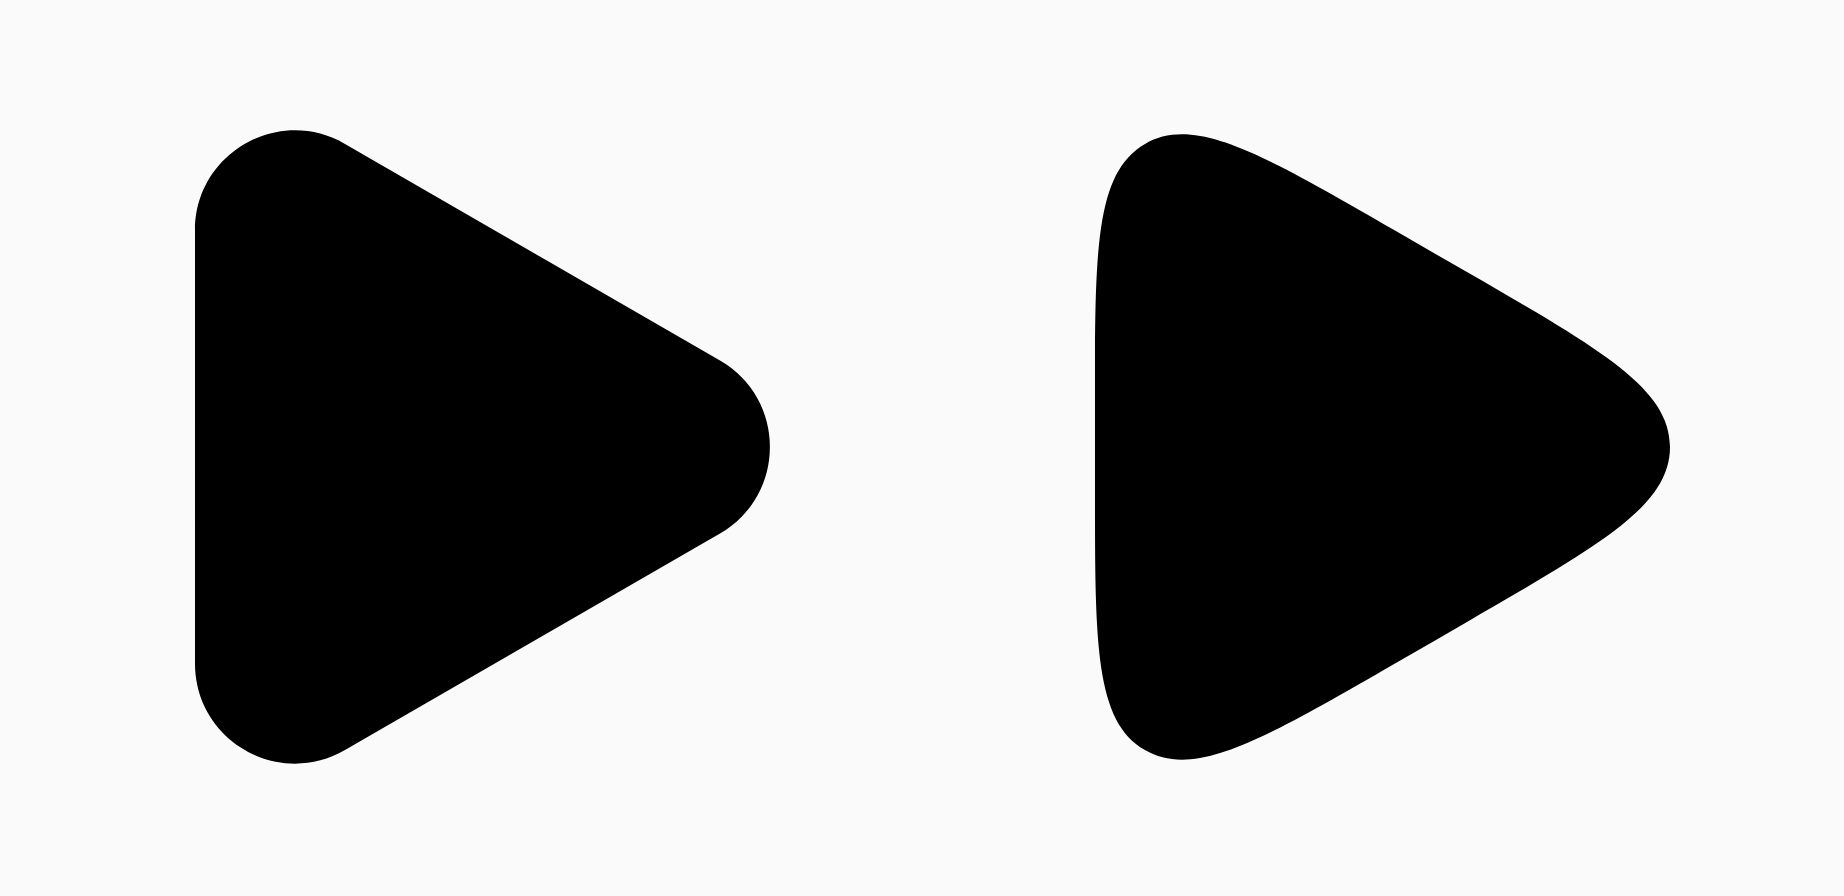 สามเหลี่ยมสีดำ 2 อันแสดงความแตกต่างของการปรับให้เรียบ
พารามิเตอร์